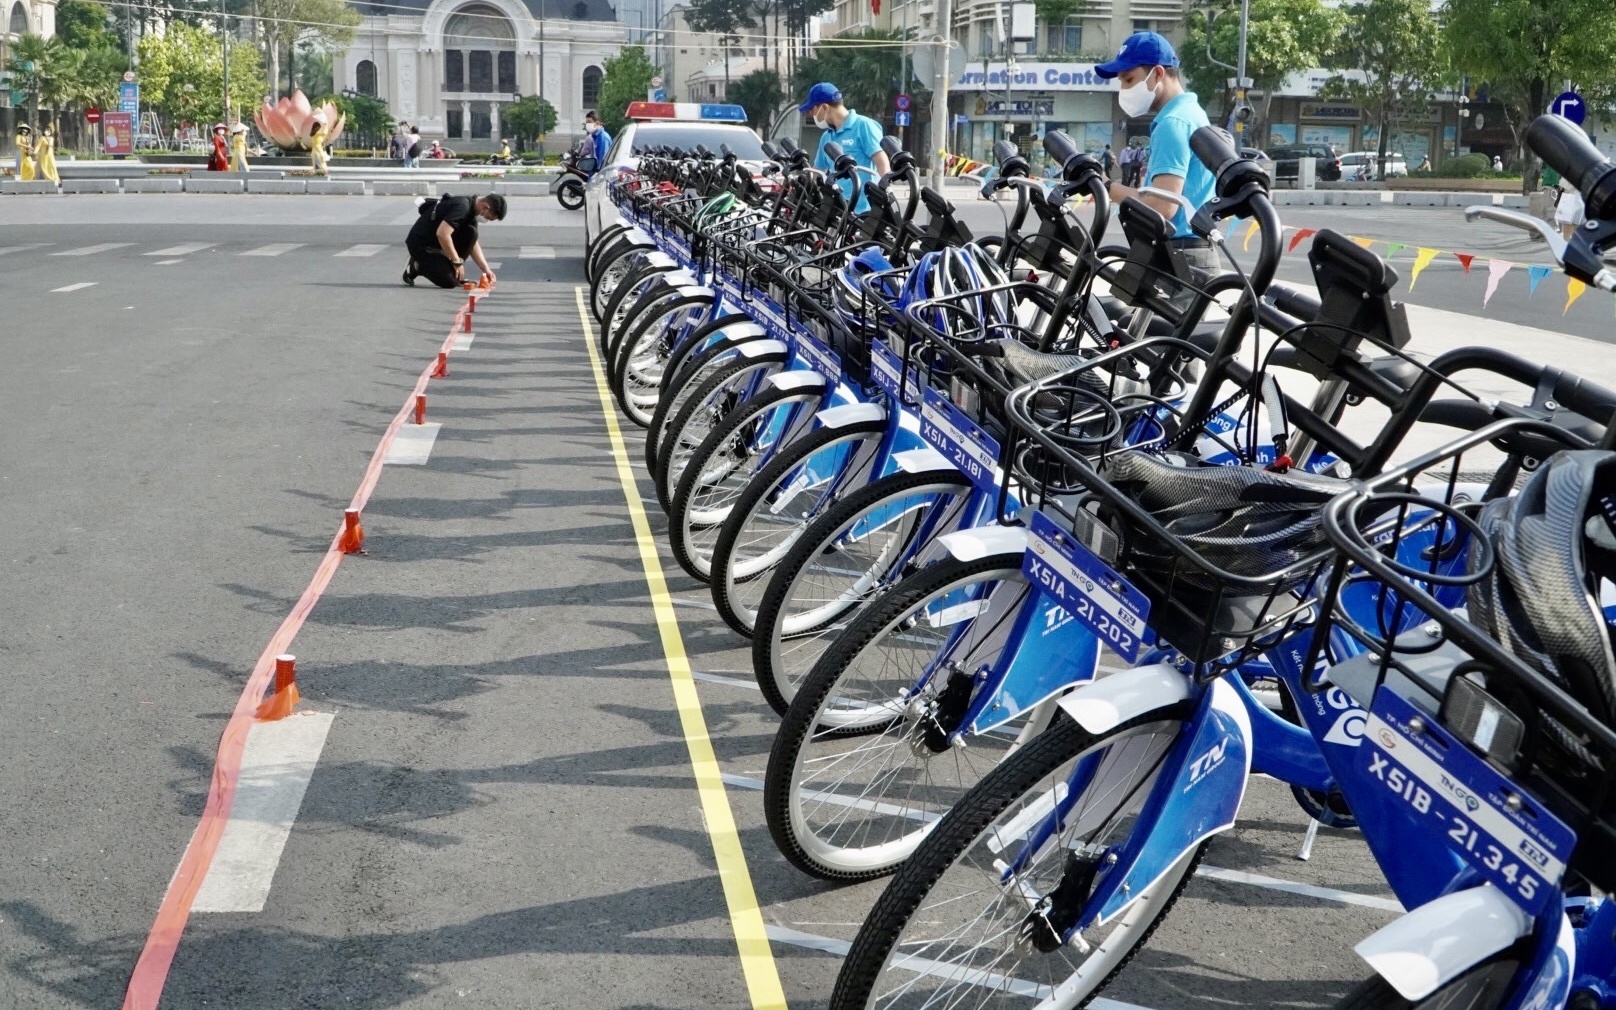 Hà Nội chính thức thí điểm dịch vụ xe đạp công cộng